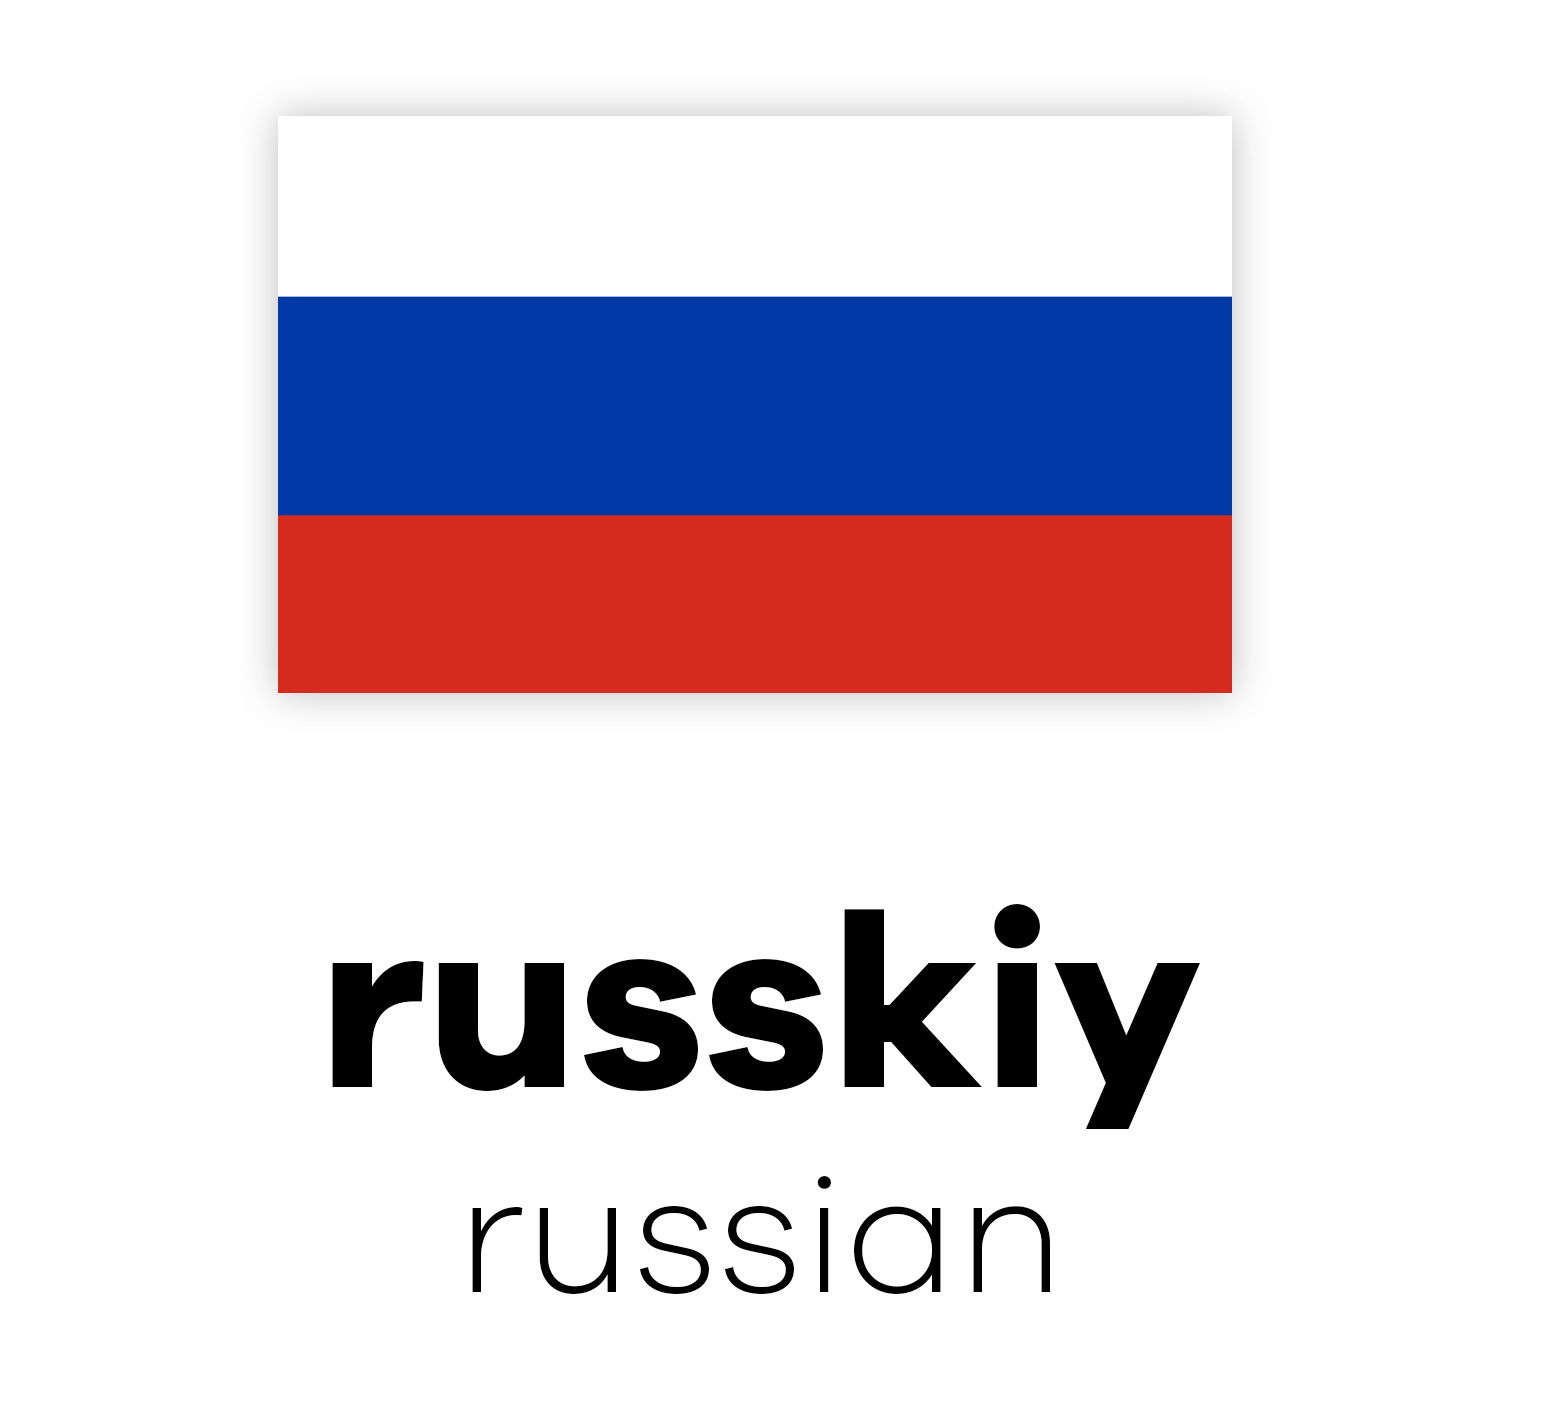 Russische Flagge mit horizontalen Streifen in Weiß, Blau und Rot über dem Wort "russkiy" und darunter "russian" in schwarzer Schrift.